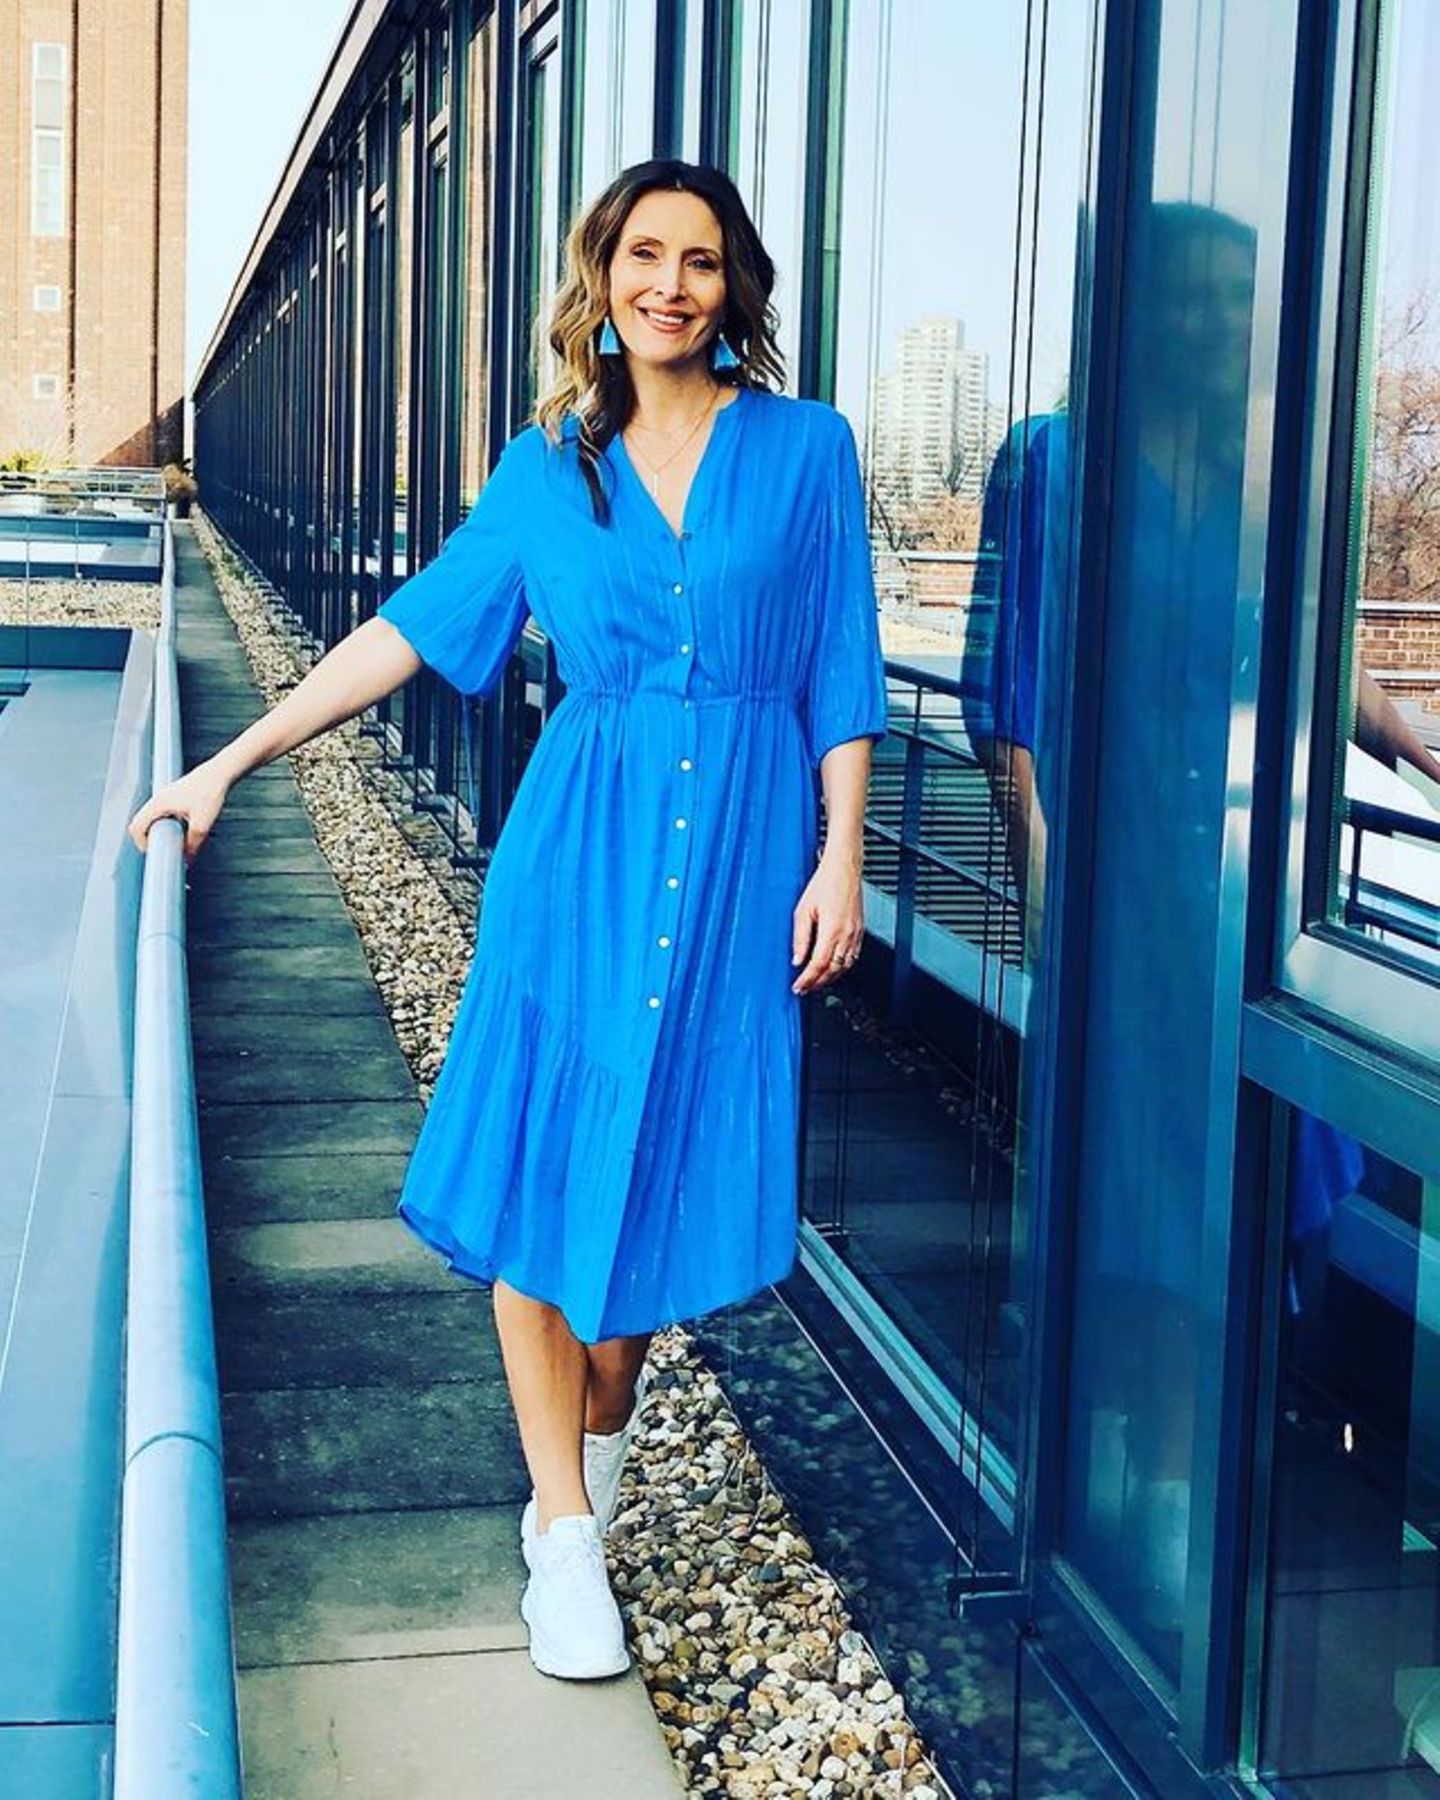 Roberta Bieling läutet in einem knallig-blauen Hemdkleid den Frühling ein. Dazu trägt sie weiße Sneaker und farblich abgestimmte Ohrringe. Scheint, als hätte sie sich den Look abgeschaut ... 